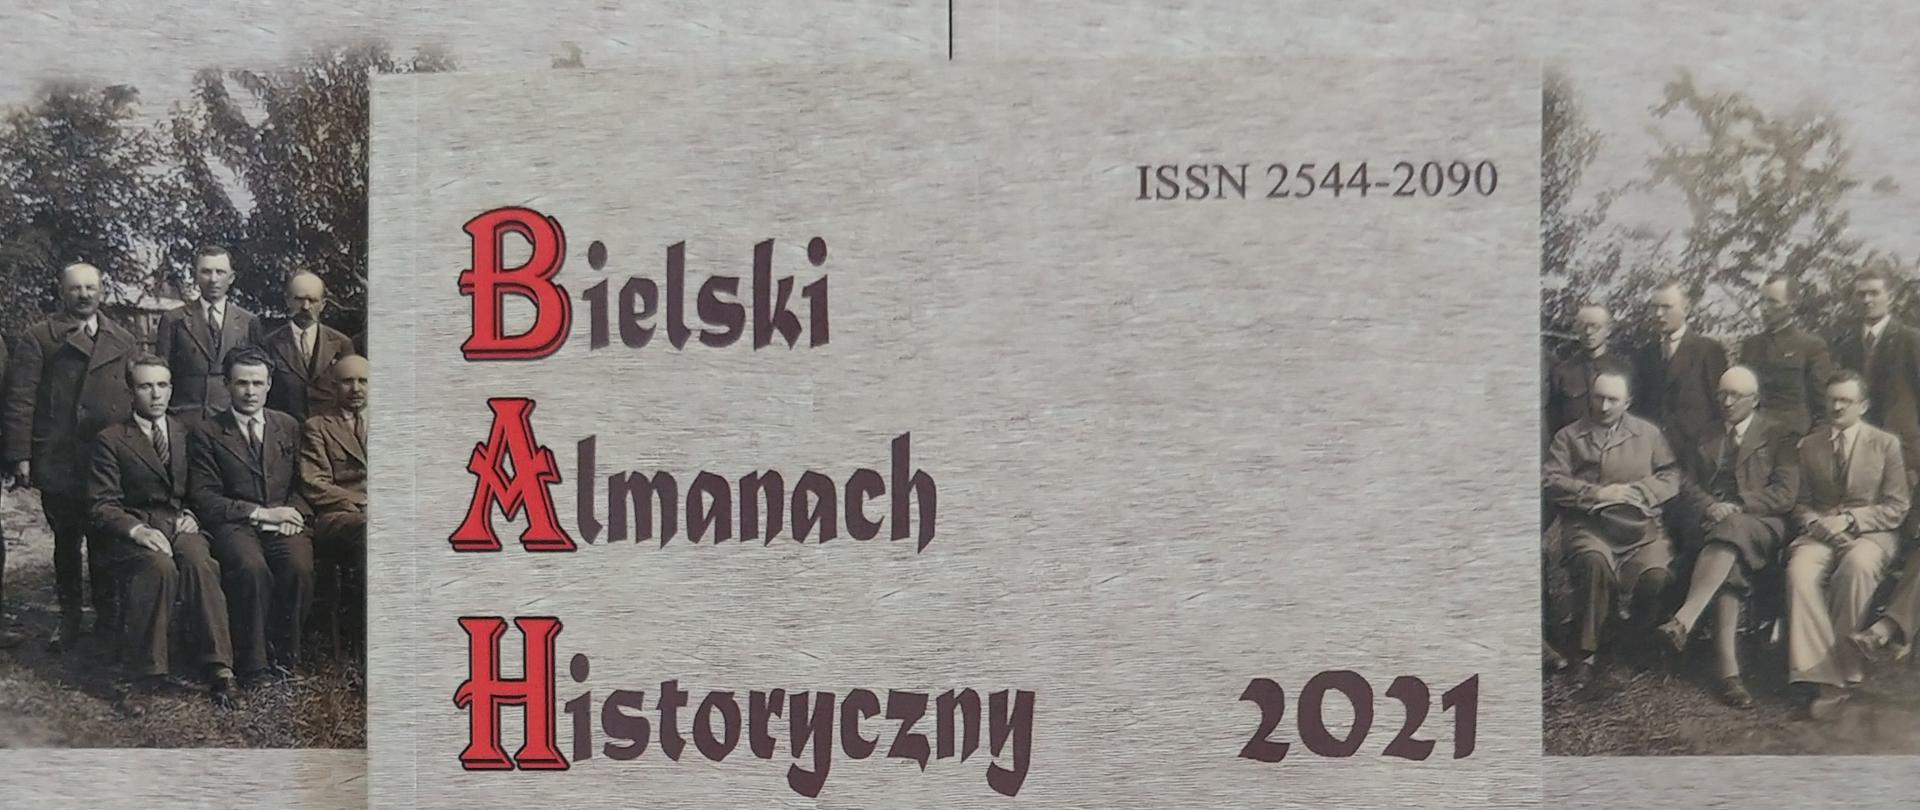 Okładka Bielskiego Almanachu Historycznego 2021